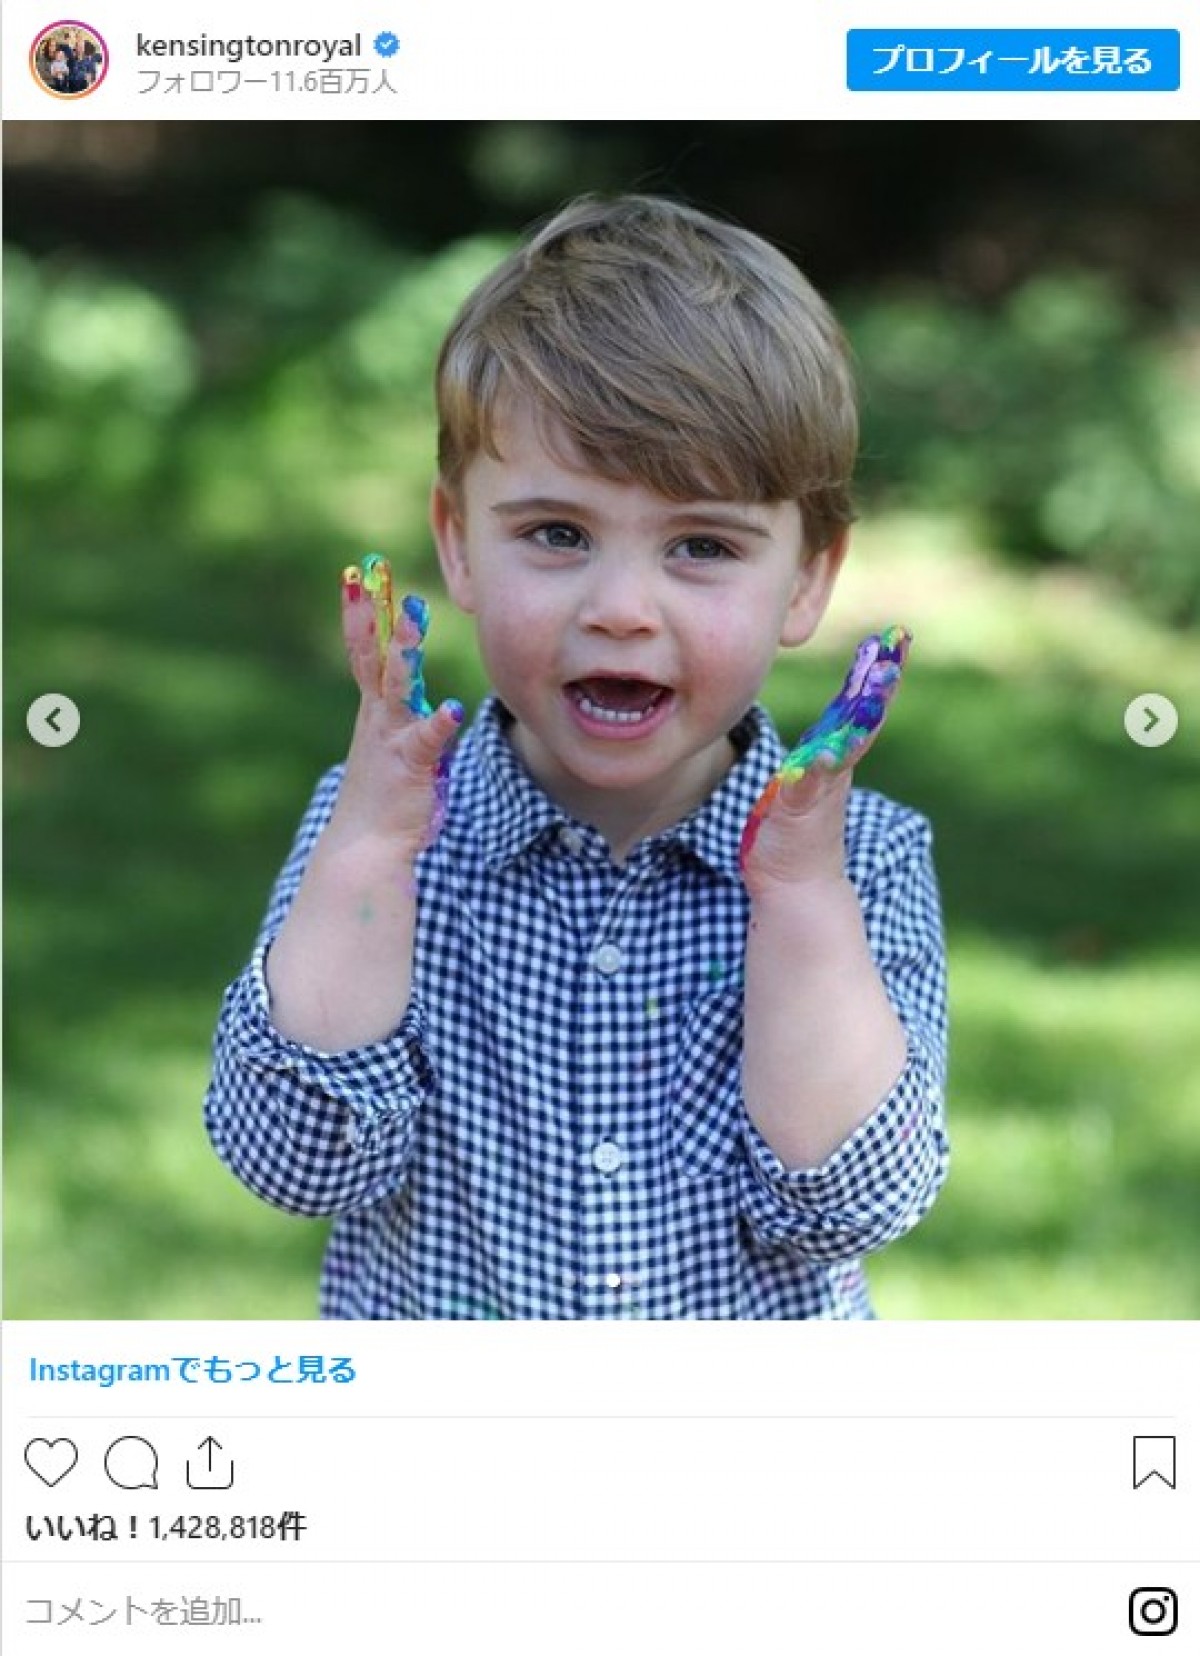 英ルイ王子2歳に！ 絵の具だらけのキュートすぎる写真公開　キャサリン妃が撮影